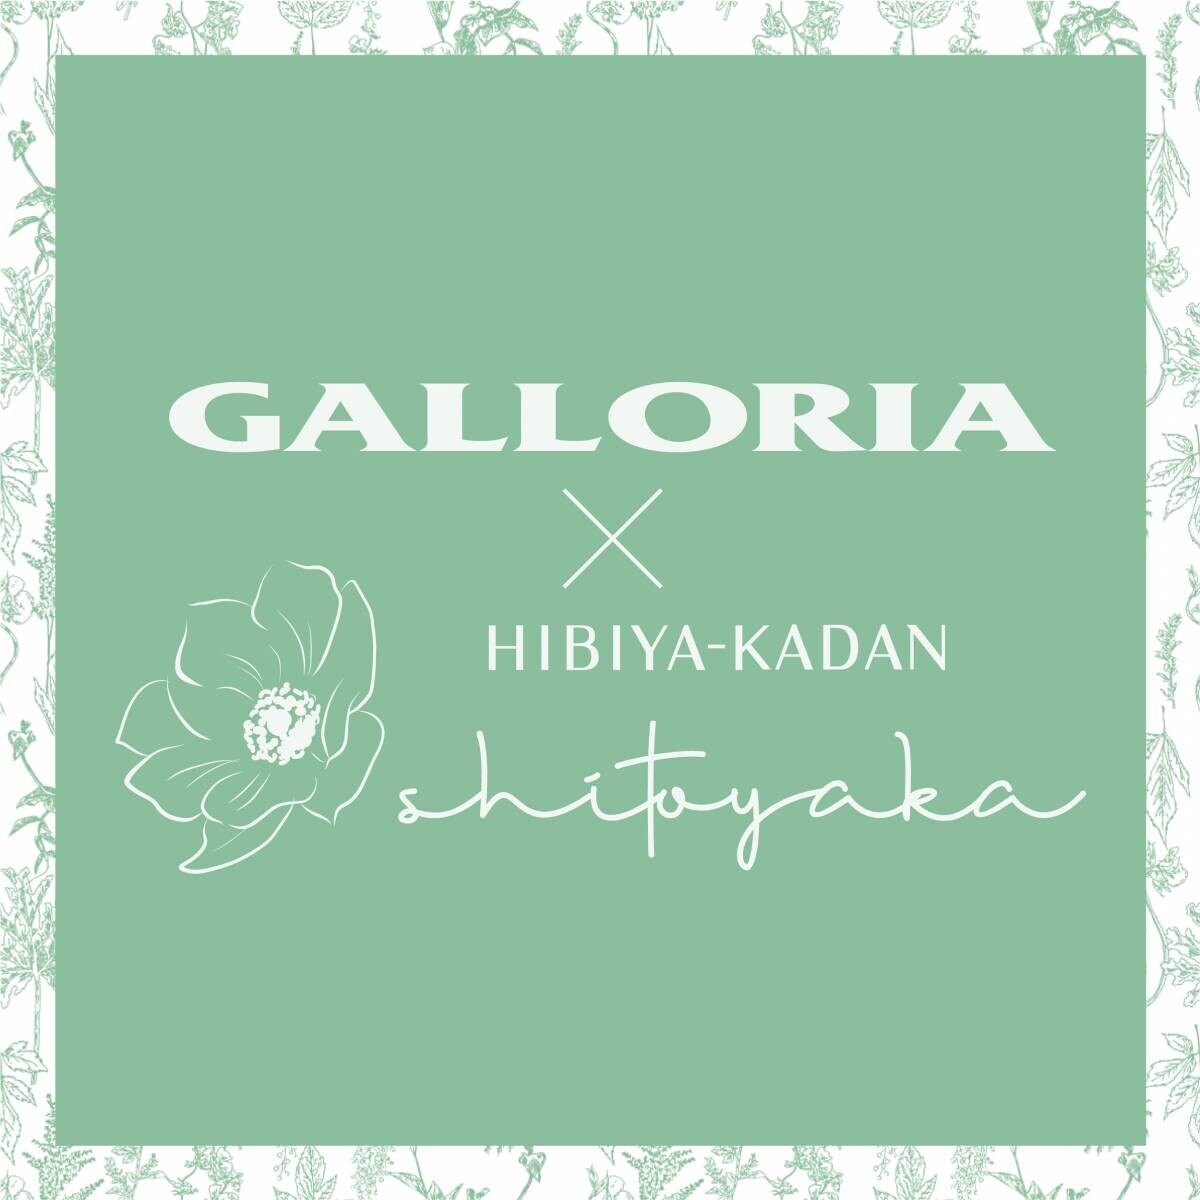 イトーヨーカ堂に「花屋さんのお花柄」を提供。コラボブランド『shitoyaka～しとやか～』の第3弾。服飾雑貨ショップ、生活雑貨、『GALLORIA』コラボアイテムが全国のイトーヨーカドーで発売されました。